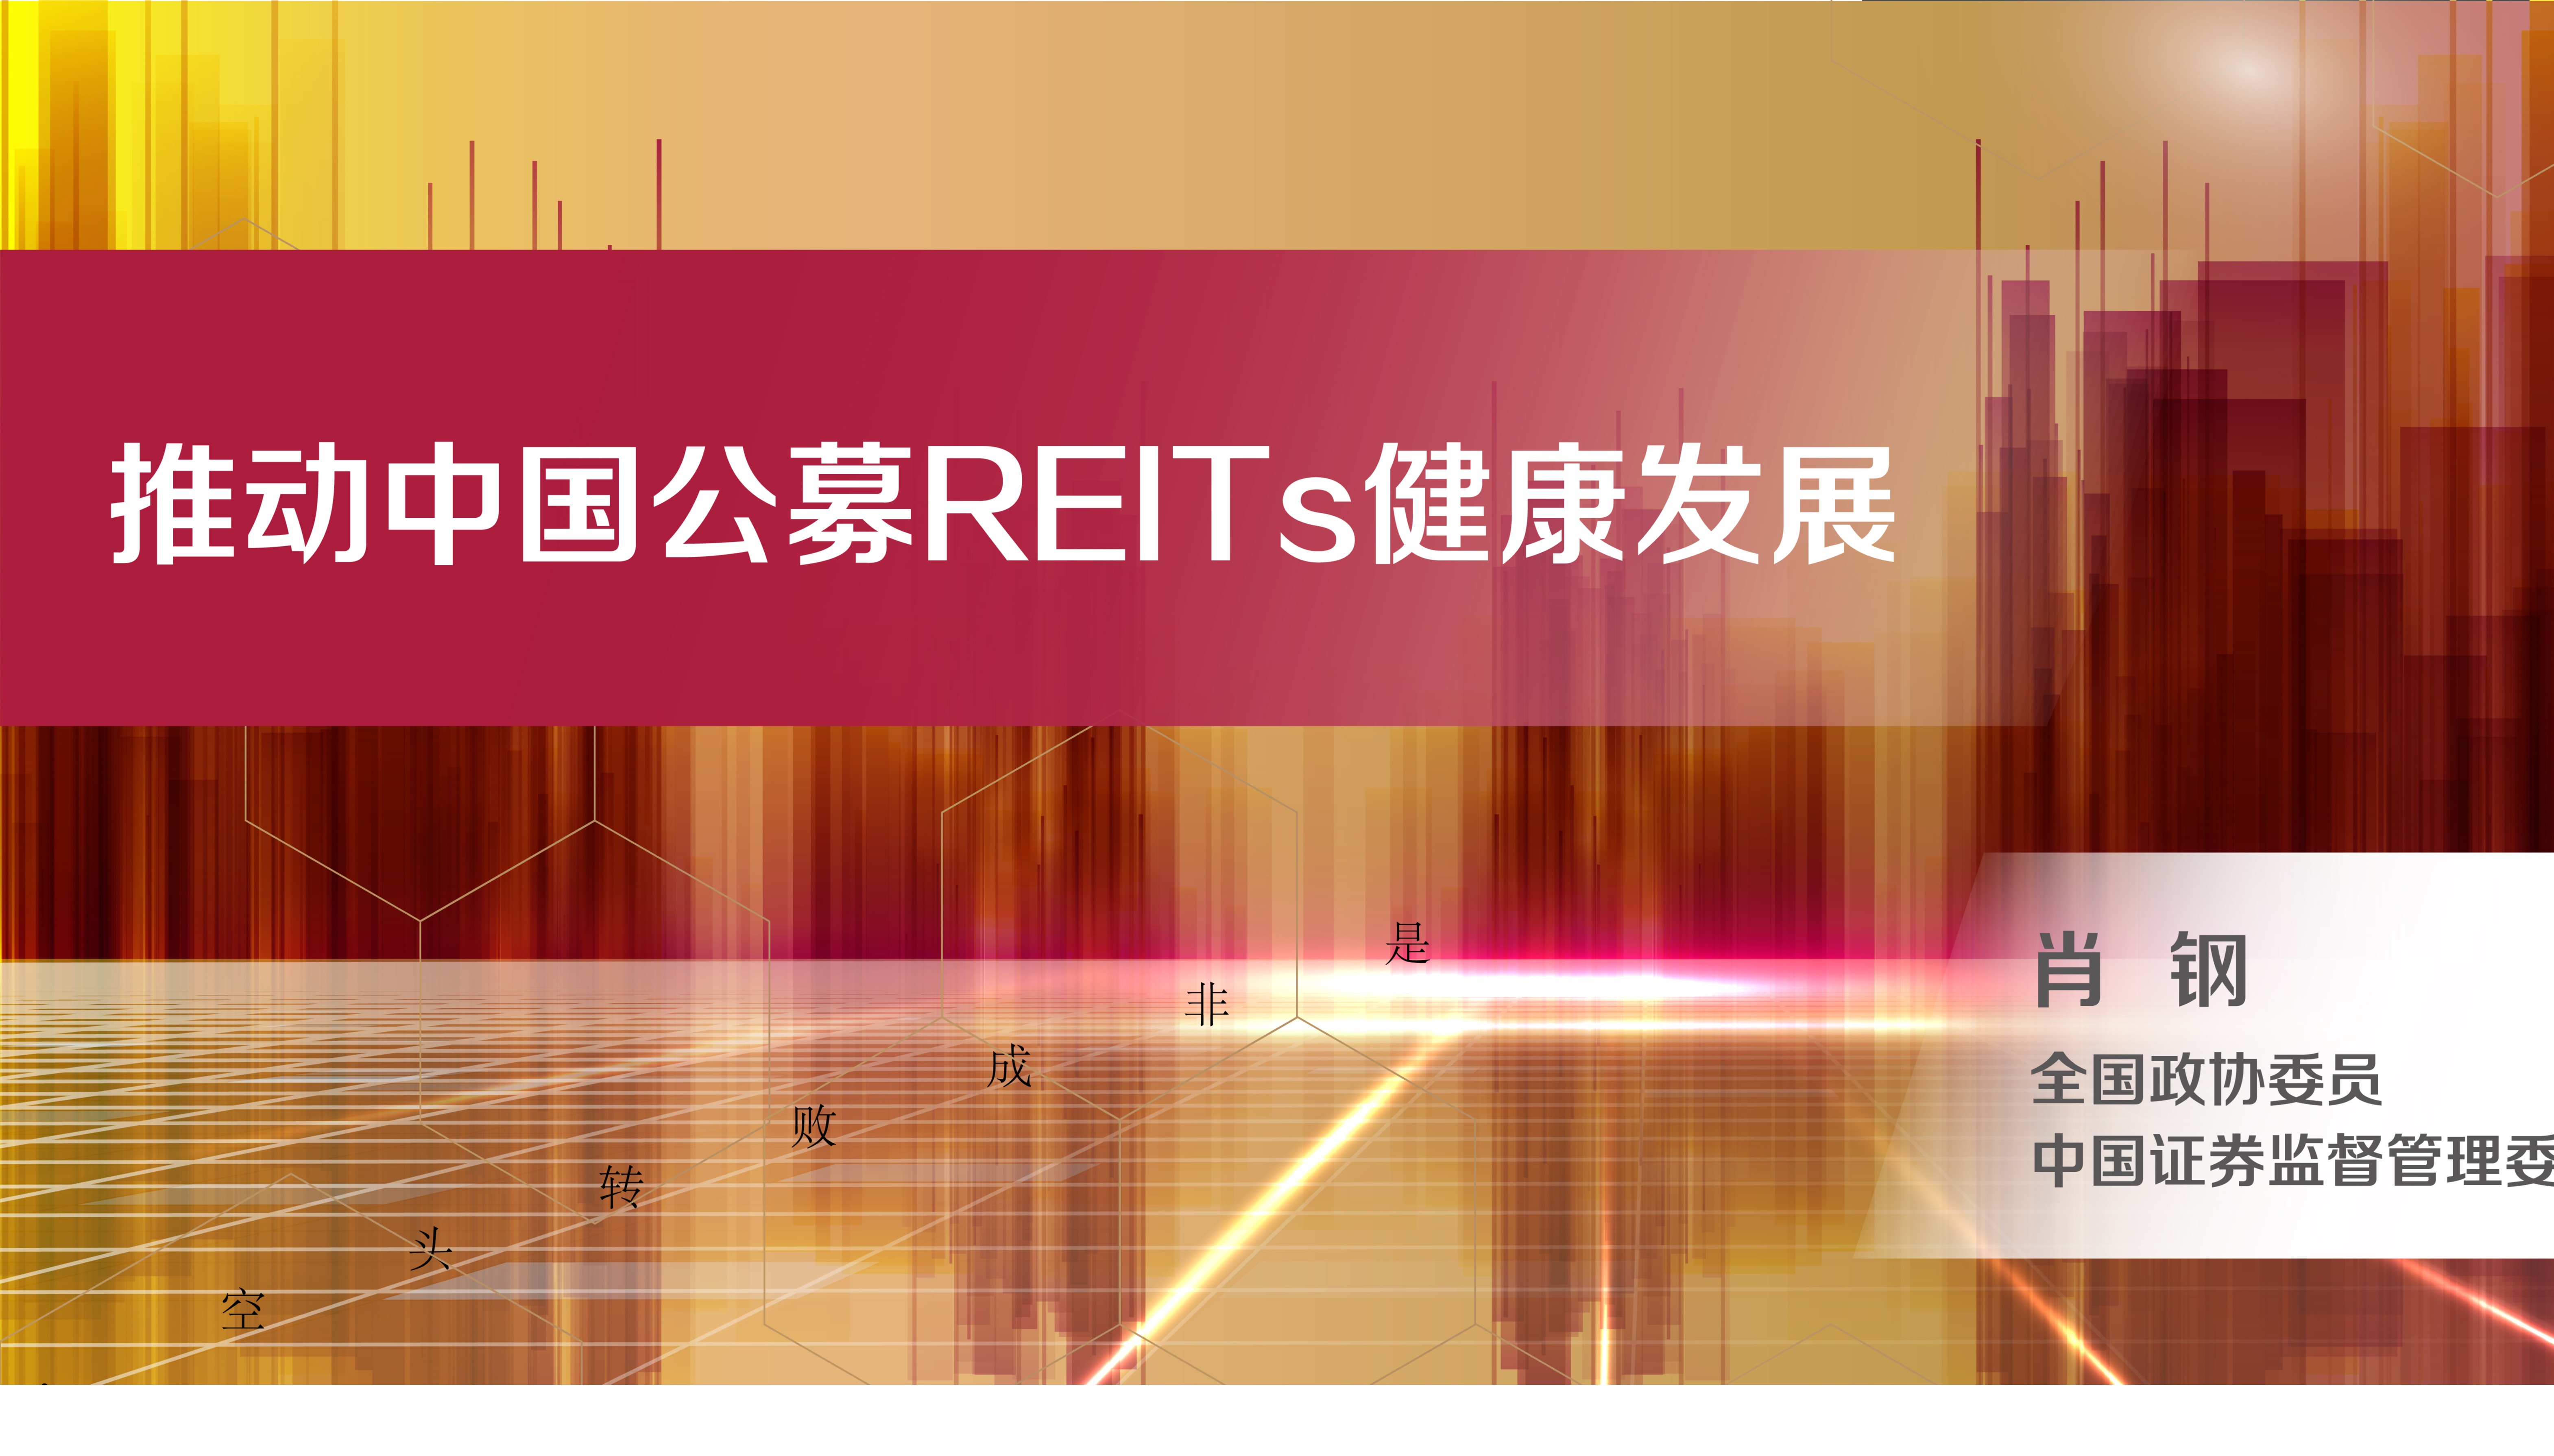 REITs助力探索中国不动产金融新模式——《中国公募REITs的实践与方向》成功发布